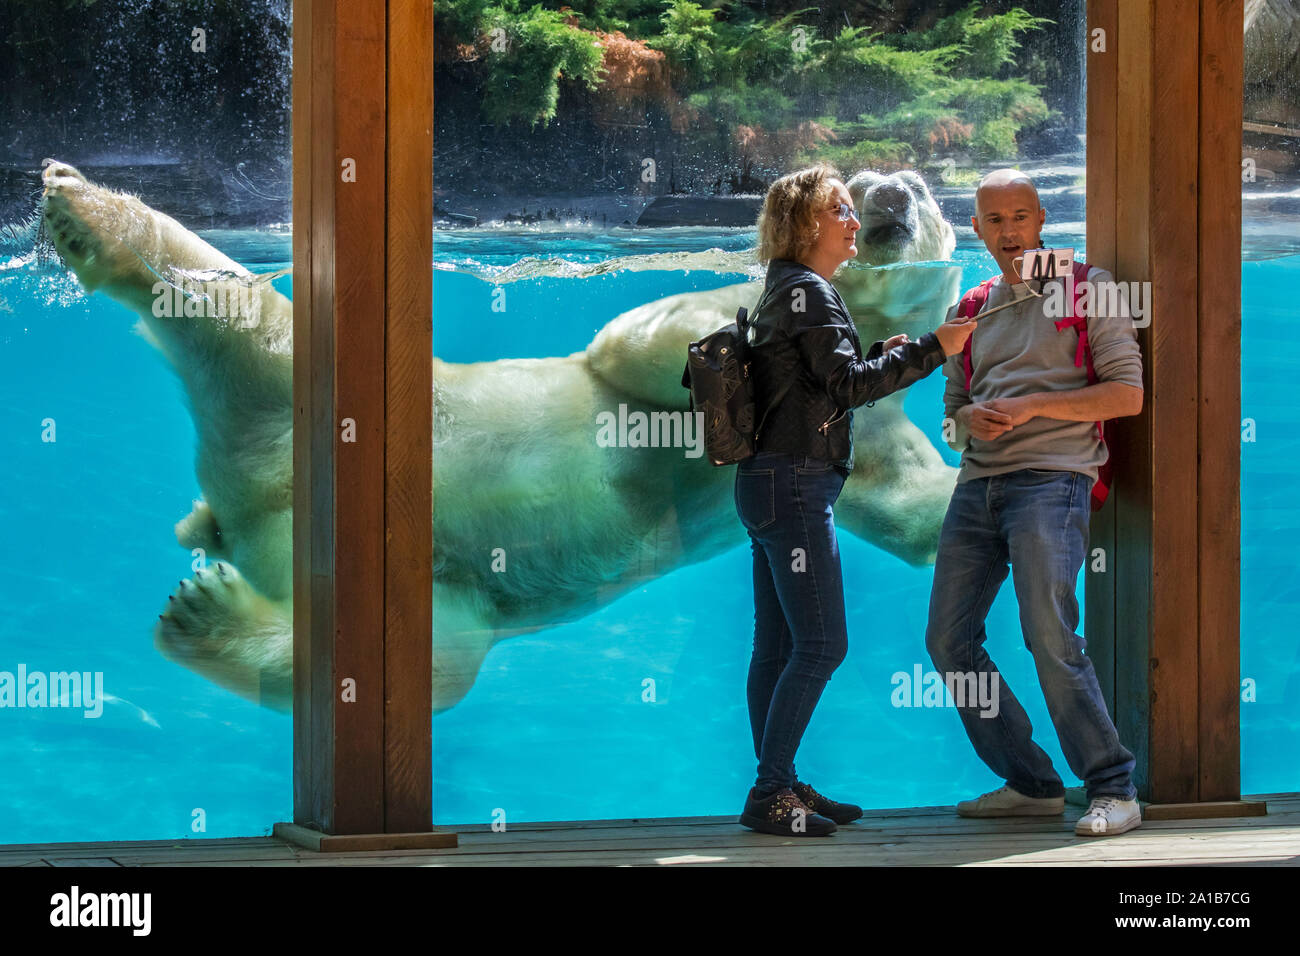 Besucher mit selfie mit Smartphone während riesige Eisbären (Ursus maritimus/Thalarctos maritimus) schwimmen Vergangenheit ist, Zoo de La Flèche, Frankreich Stockfoto